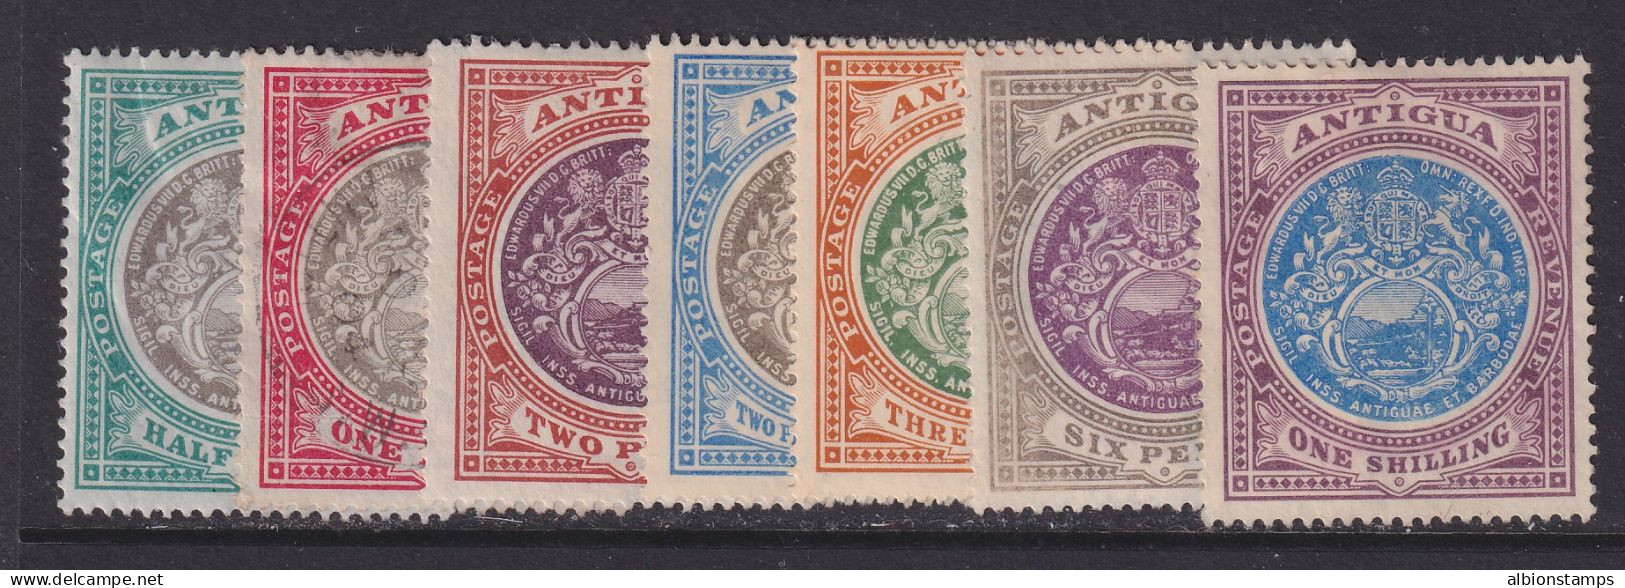 Antigua, Scott 21-27 (SG 31-37), MNG (no Gum), 1p Used - 1858-1960 Colonie Britannique